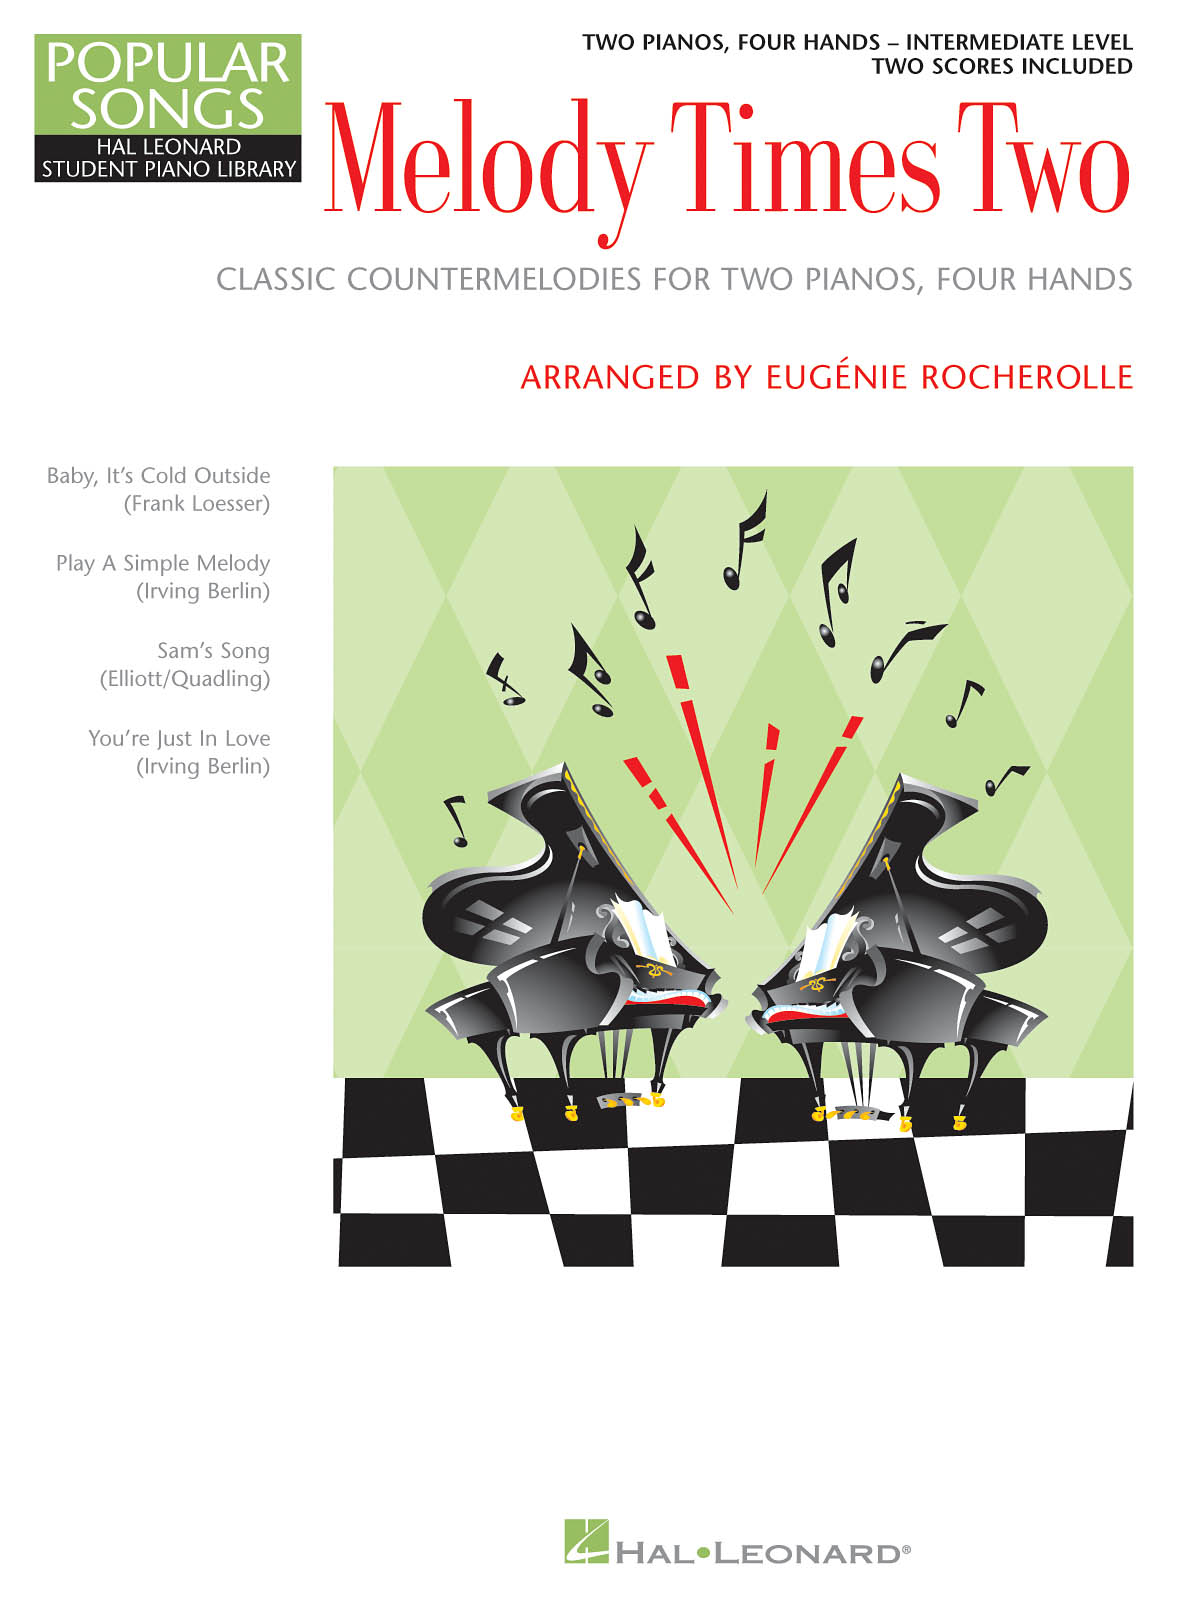 Eugenie Rocherolle - Melody Times Two - noty pro čtyřruční klavír